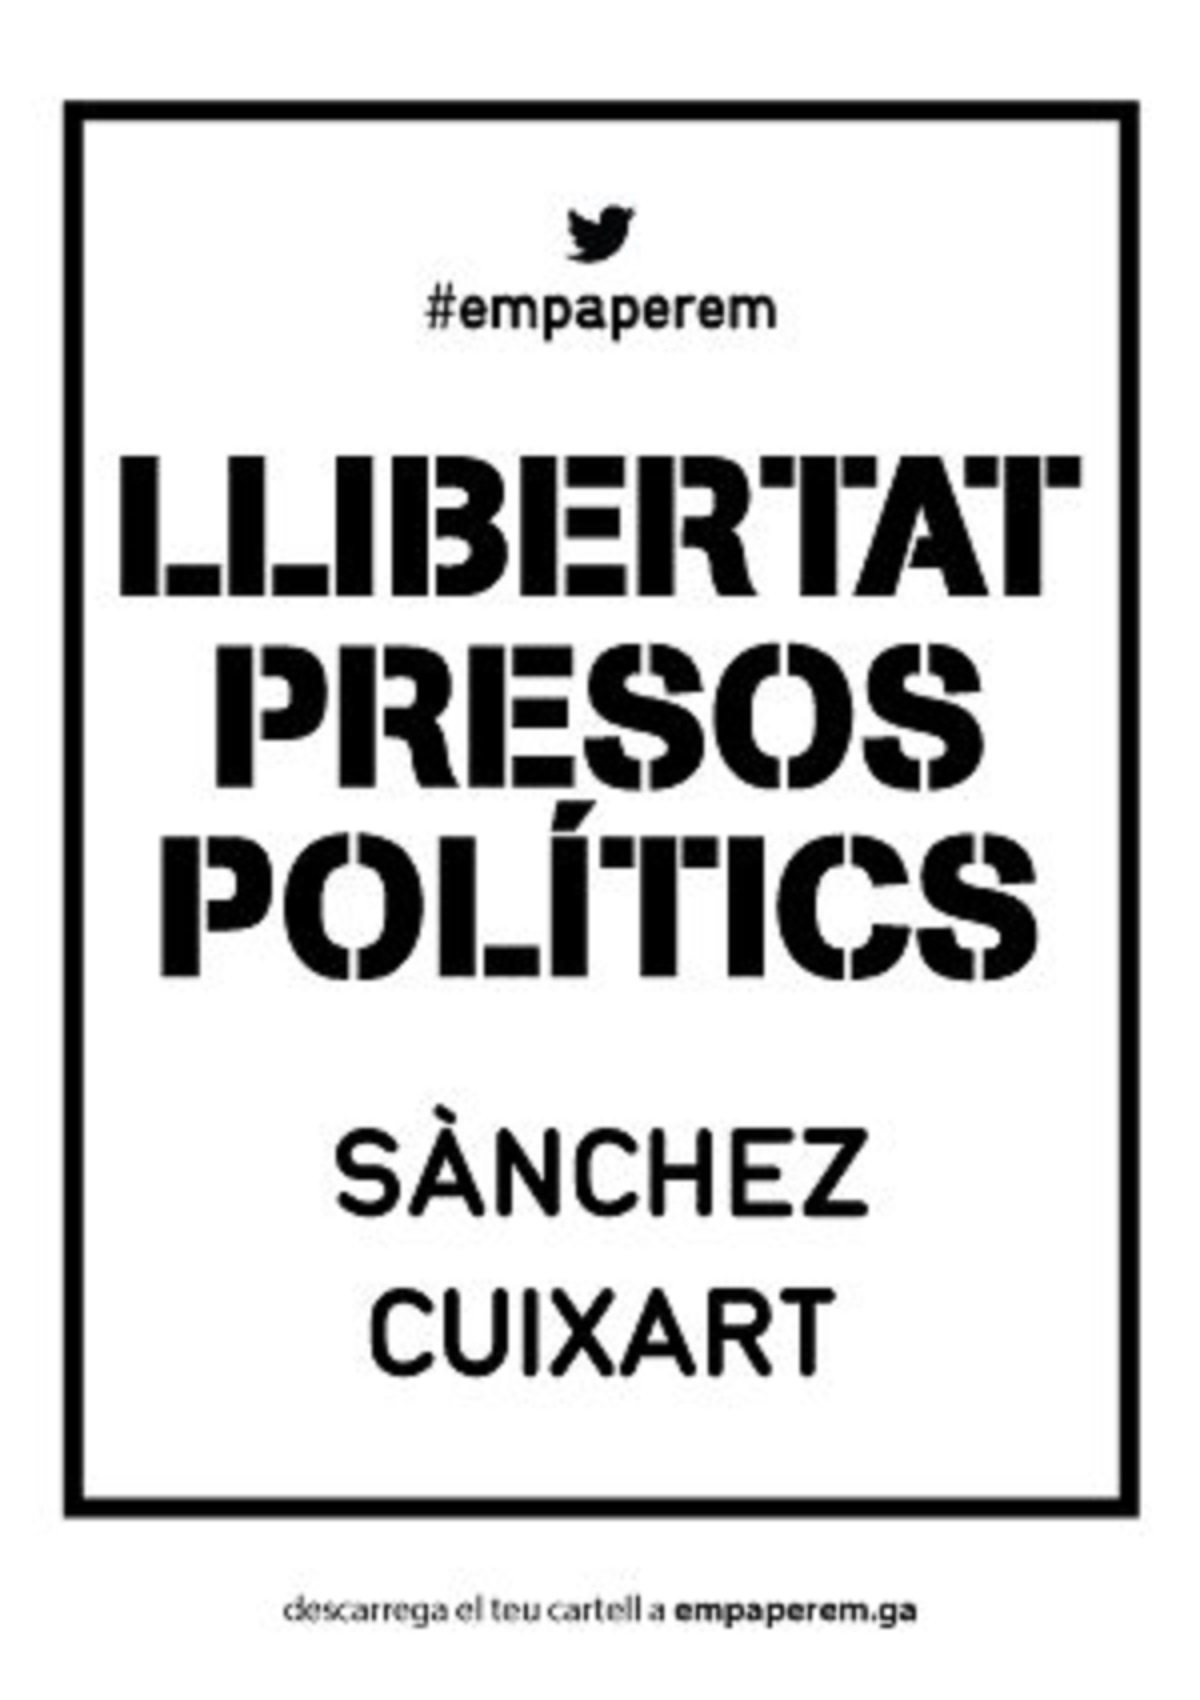 "Libertad presos políticos", la nueva campaña de Empaperem